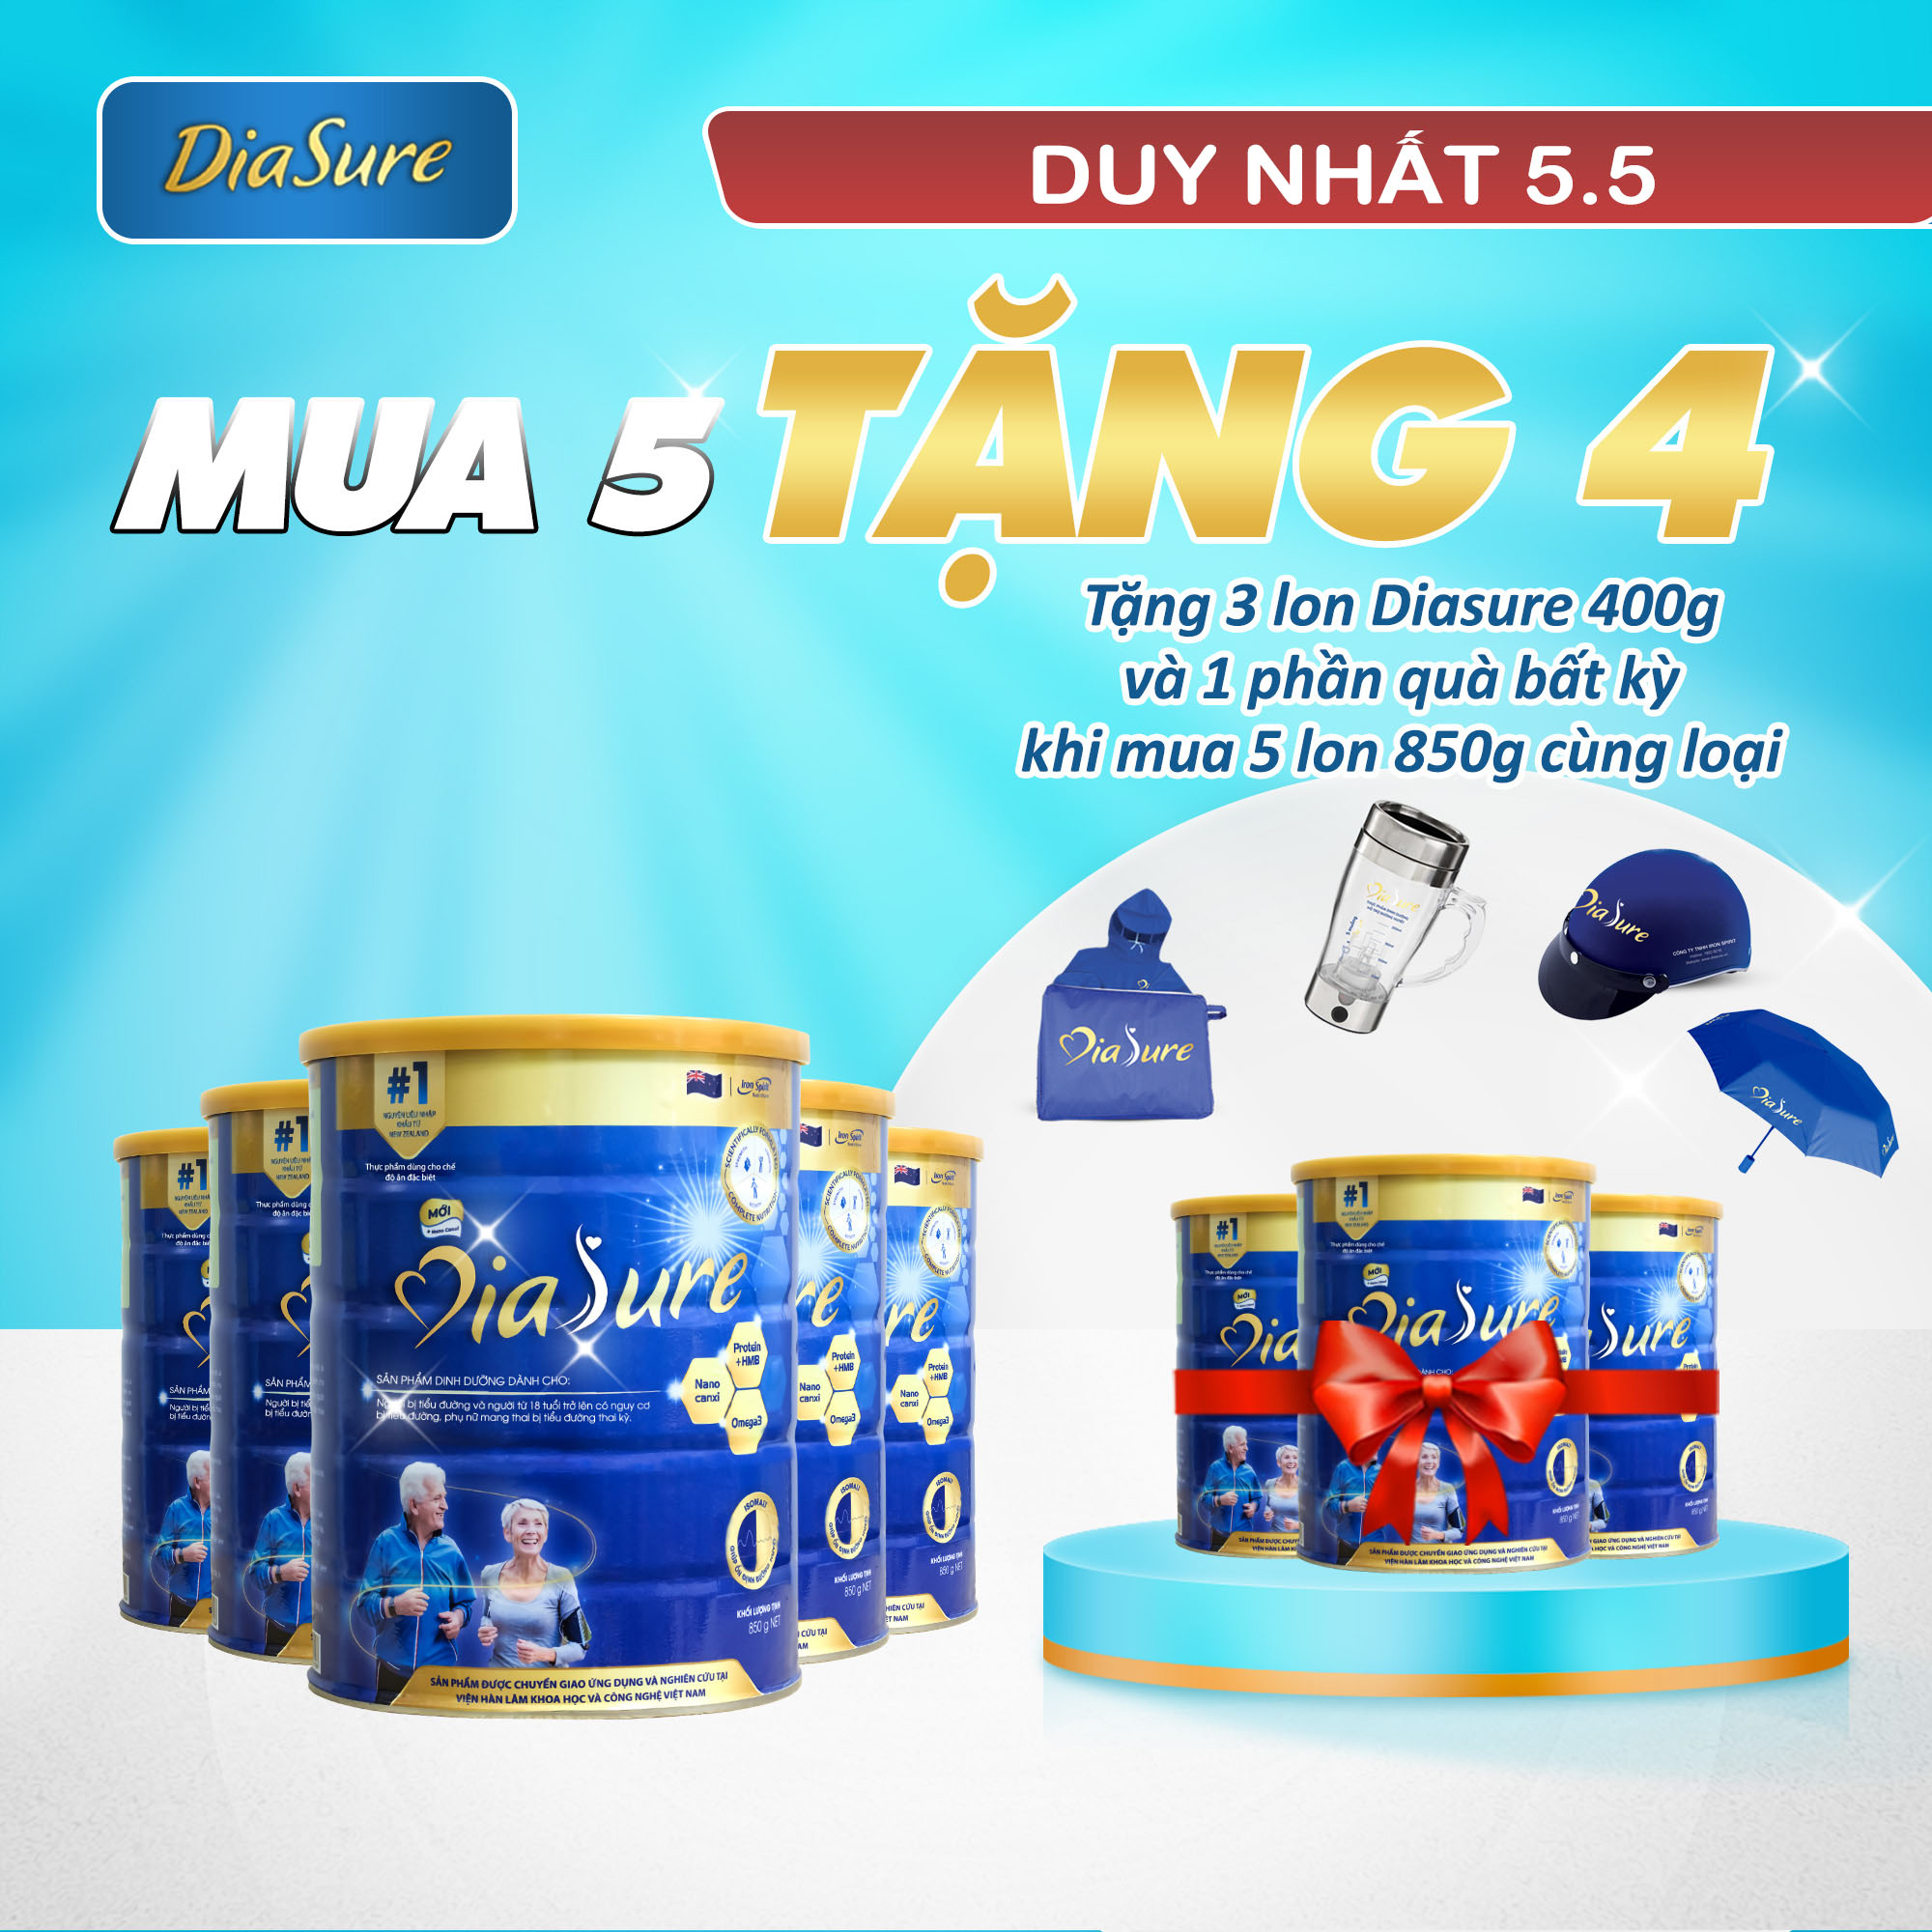 Sữa Non Diasure 850G (NEW) bổ sung thêm Nano Canxi Omega3 Protein HMB  (Mua 5 tặng 3 hộp 450G)-Sữa dành cho người tiểu đường